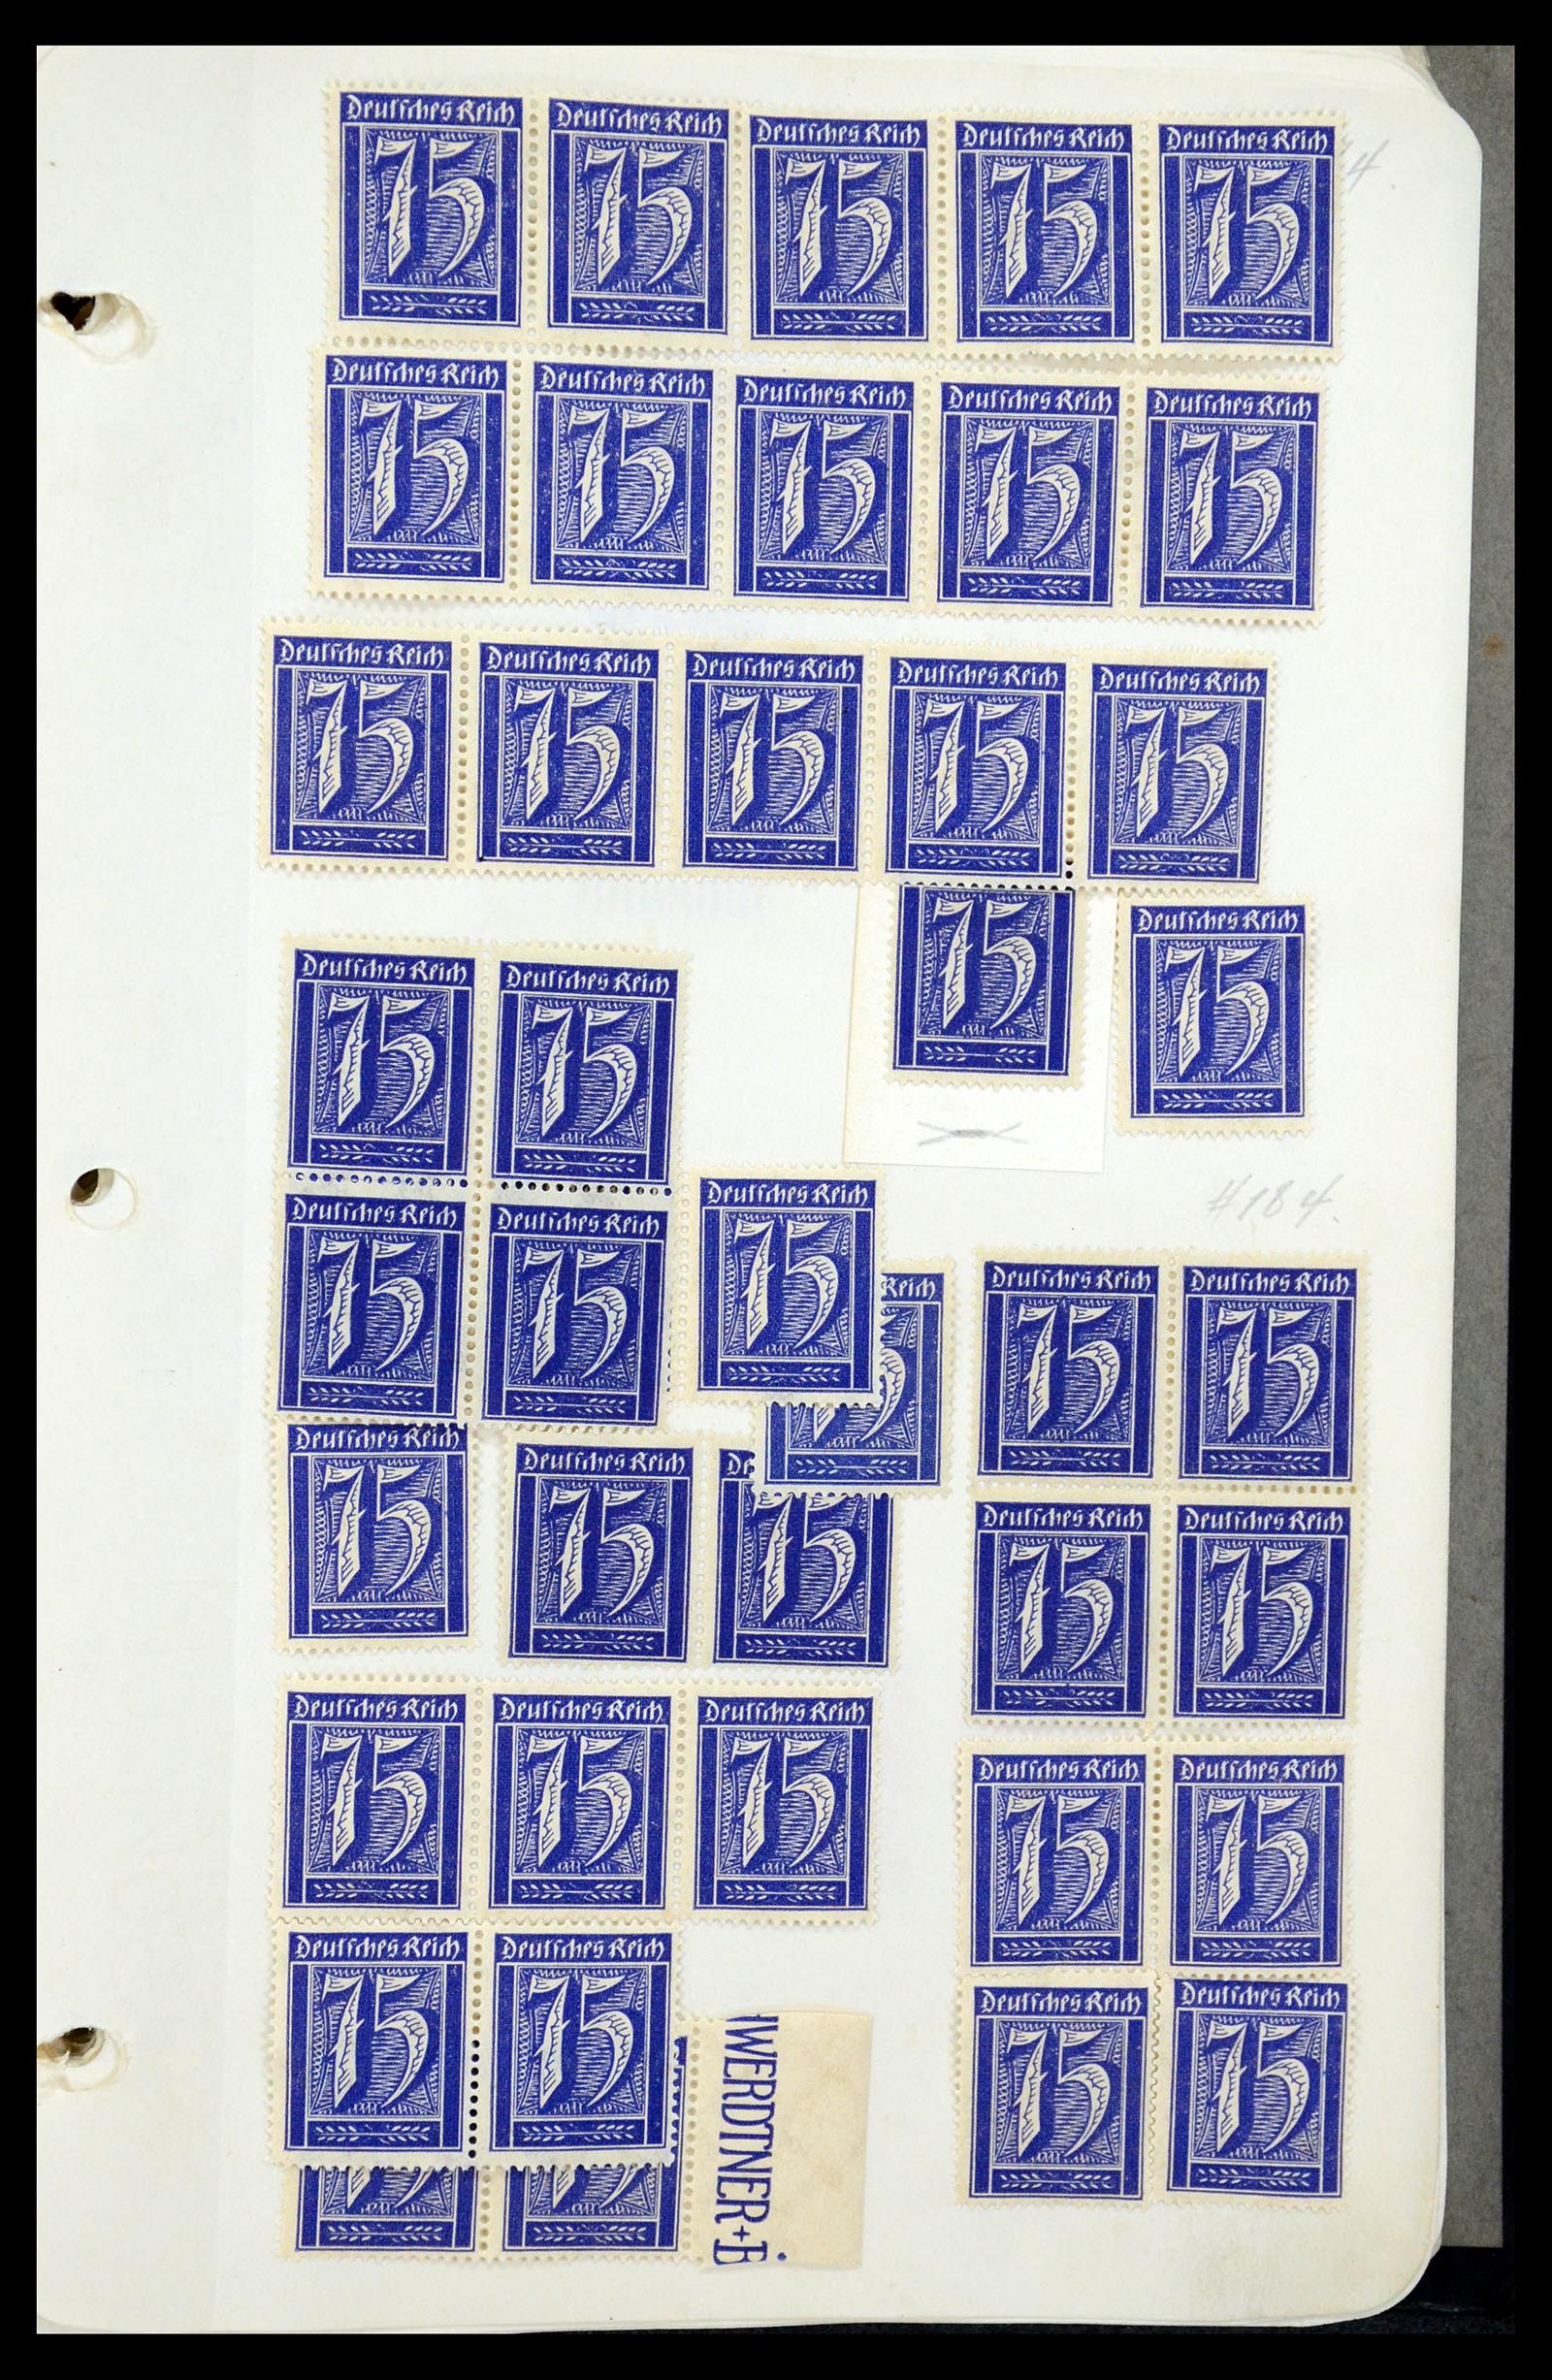 35565 772 - Postzegelverzameling 35565 Duitse Rijk infla 1919-1923.